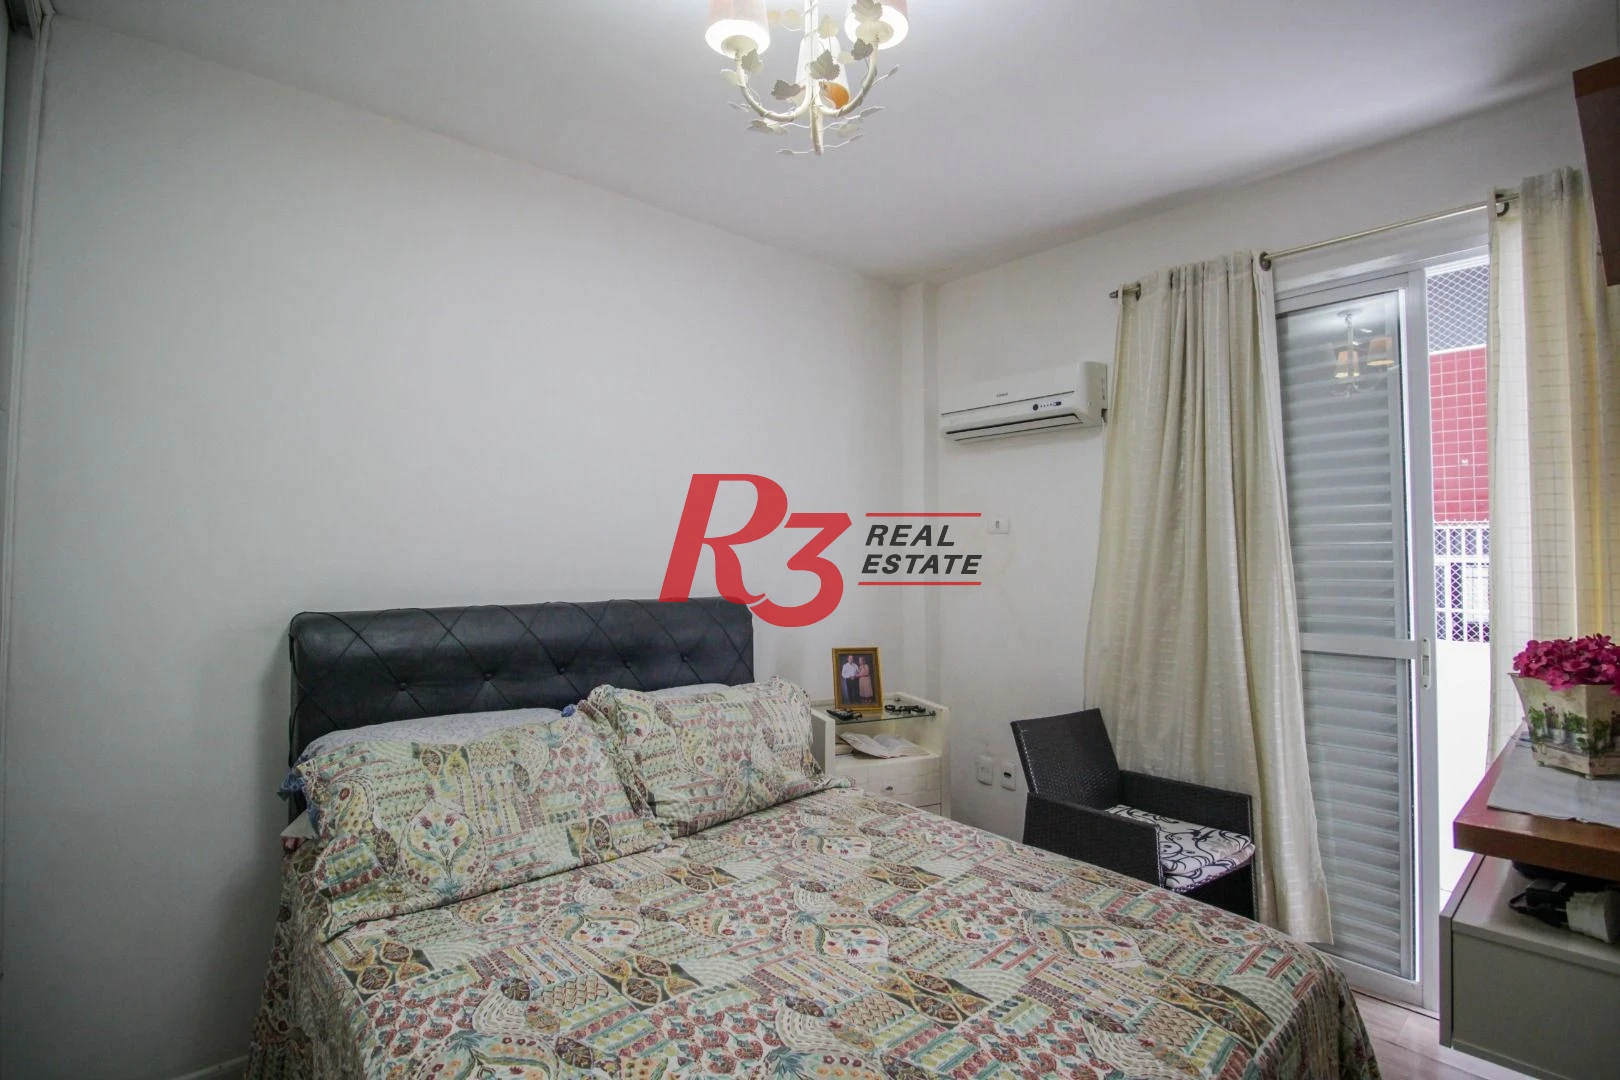 Apartamento Garden com 1 dormitório à venda, 56 m² por R$ 410.000,00 - Campo Grande - Santos/SP